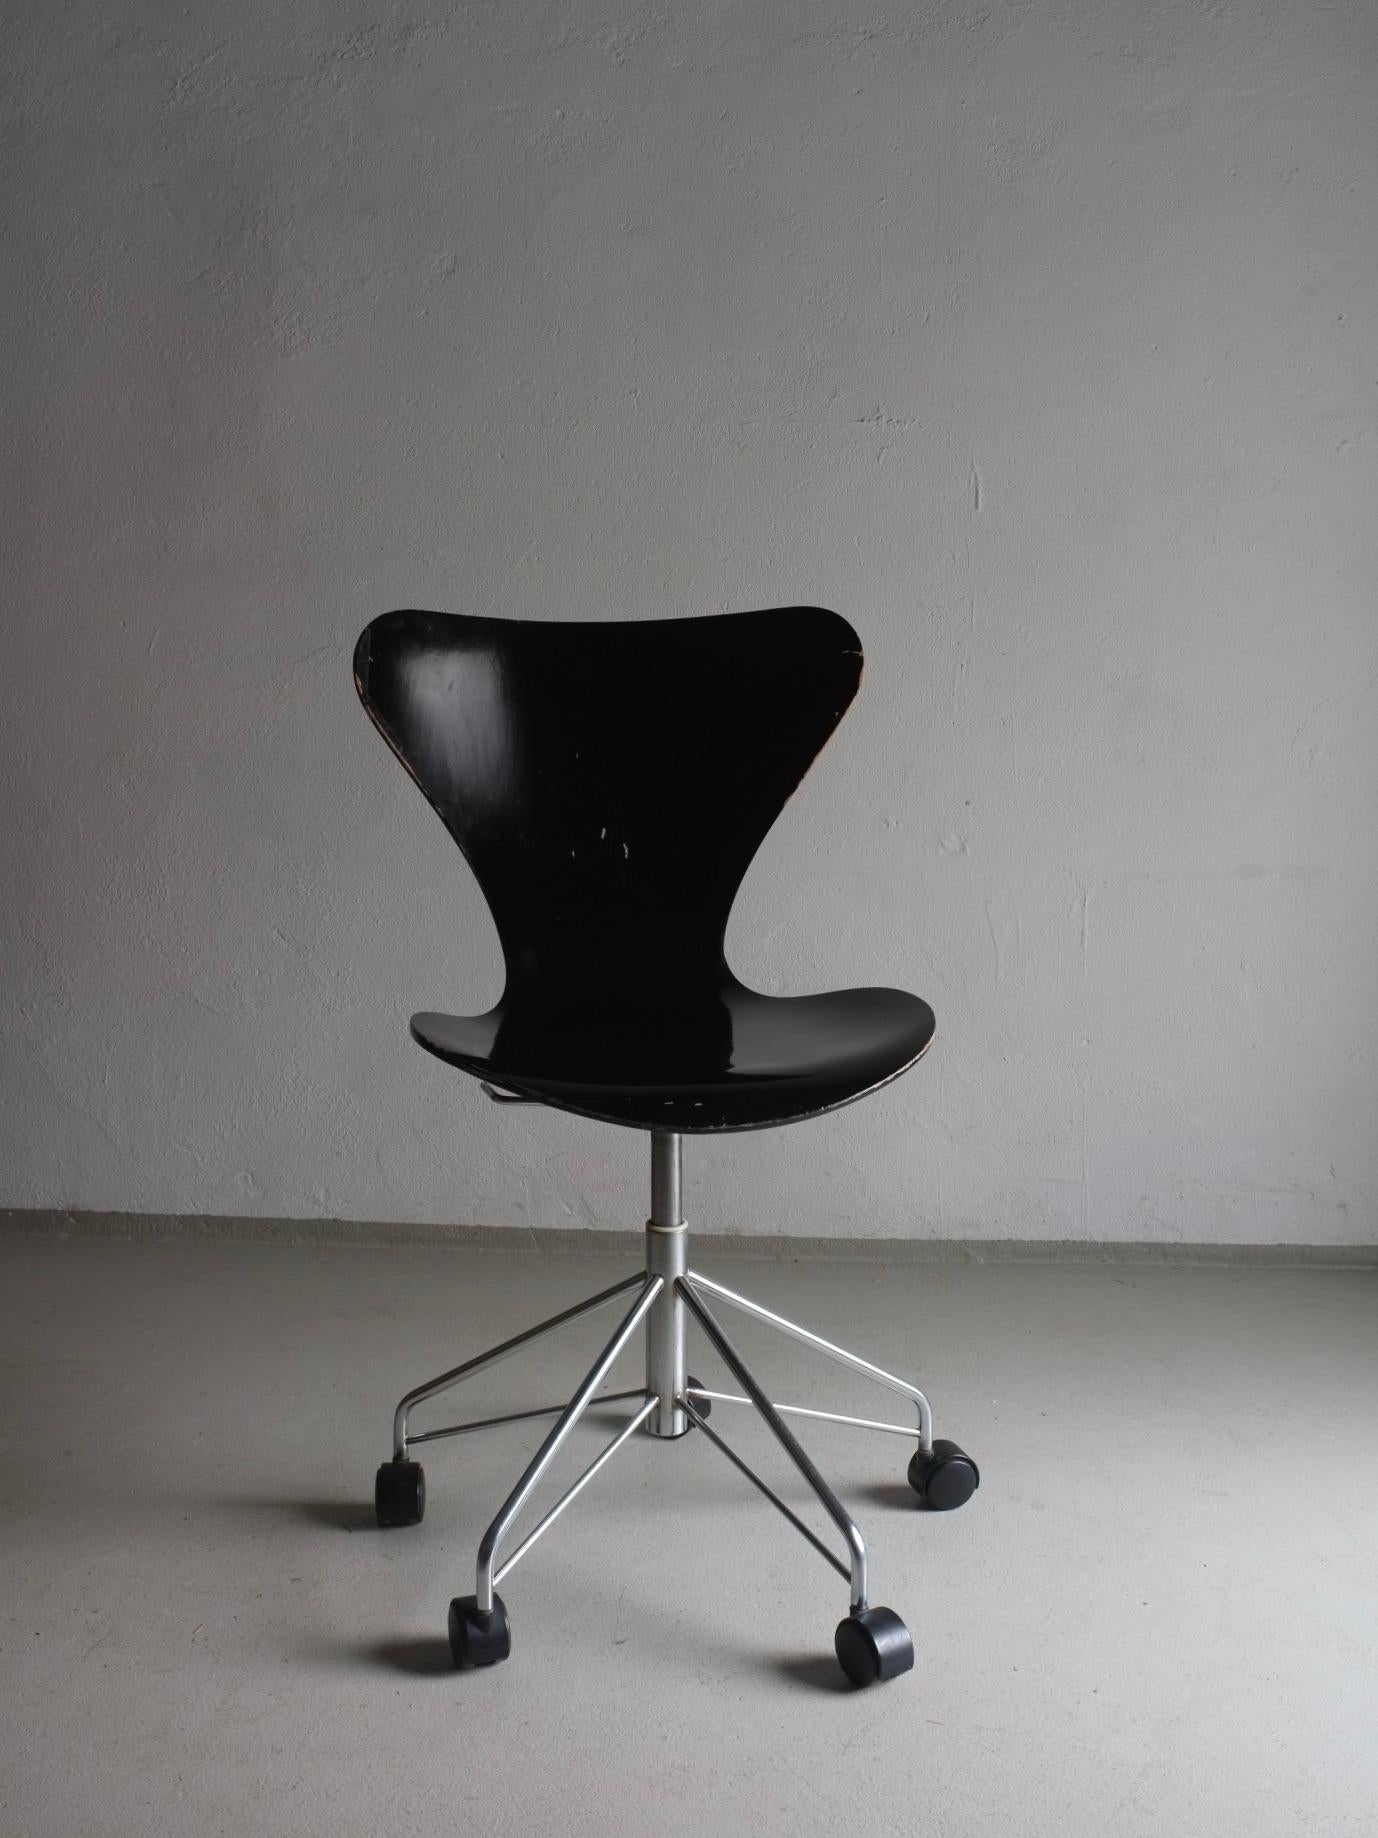 Chaise de bureau pivotante noire vintage avec siège réglable, modèle 3117 conçu par Arne Jacobsen pour Fritz Hansen dans les années 1950. Certaines chaises ont des autocollants confirmant la période de production. 3 chaises sont disponibles. 